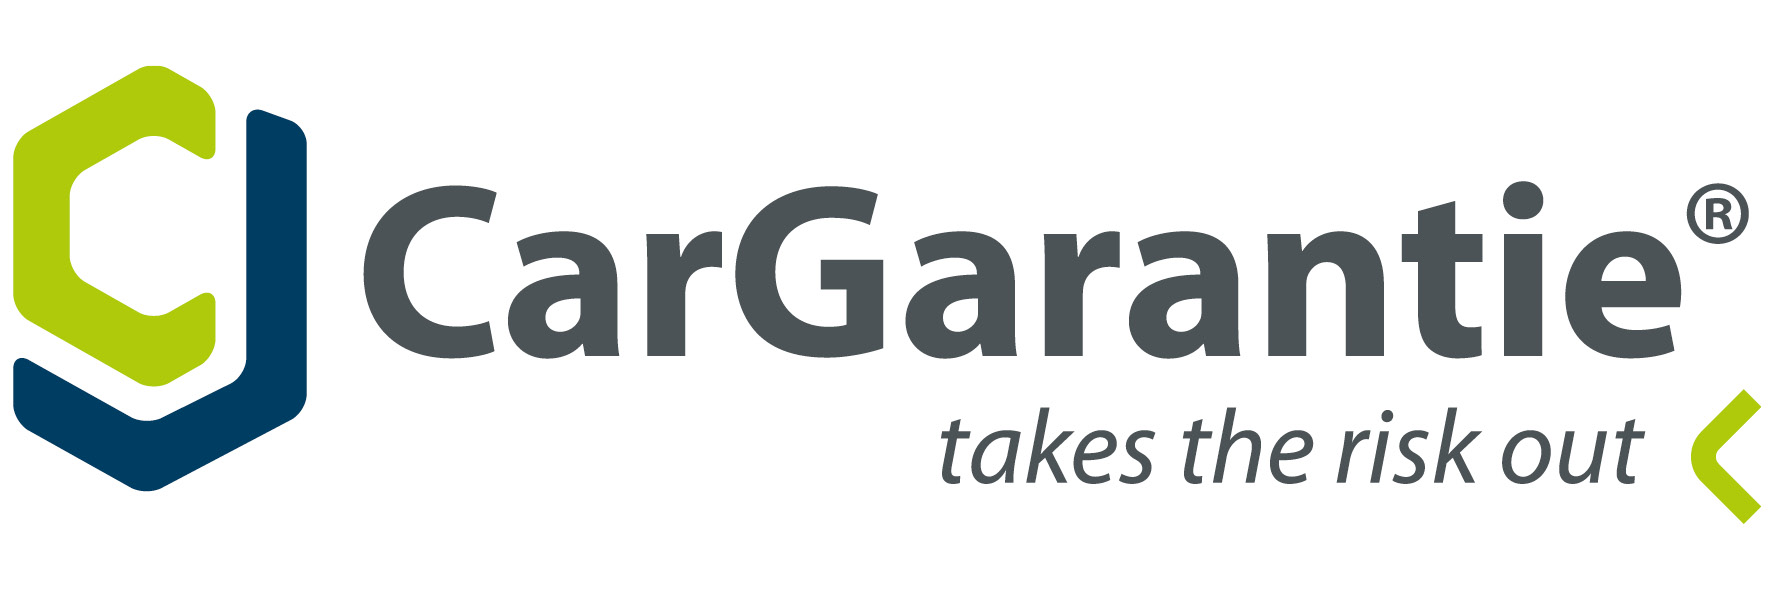 CarGarantie-logo